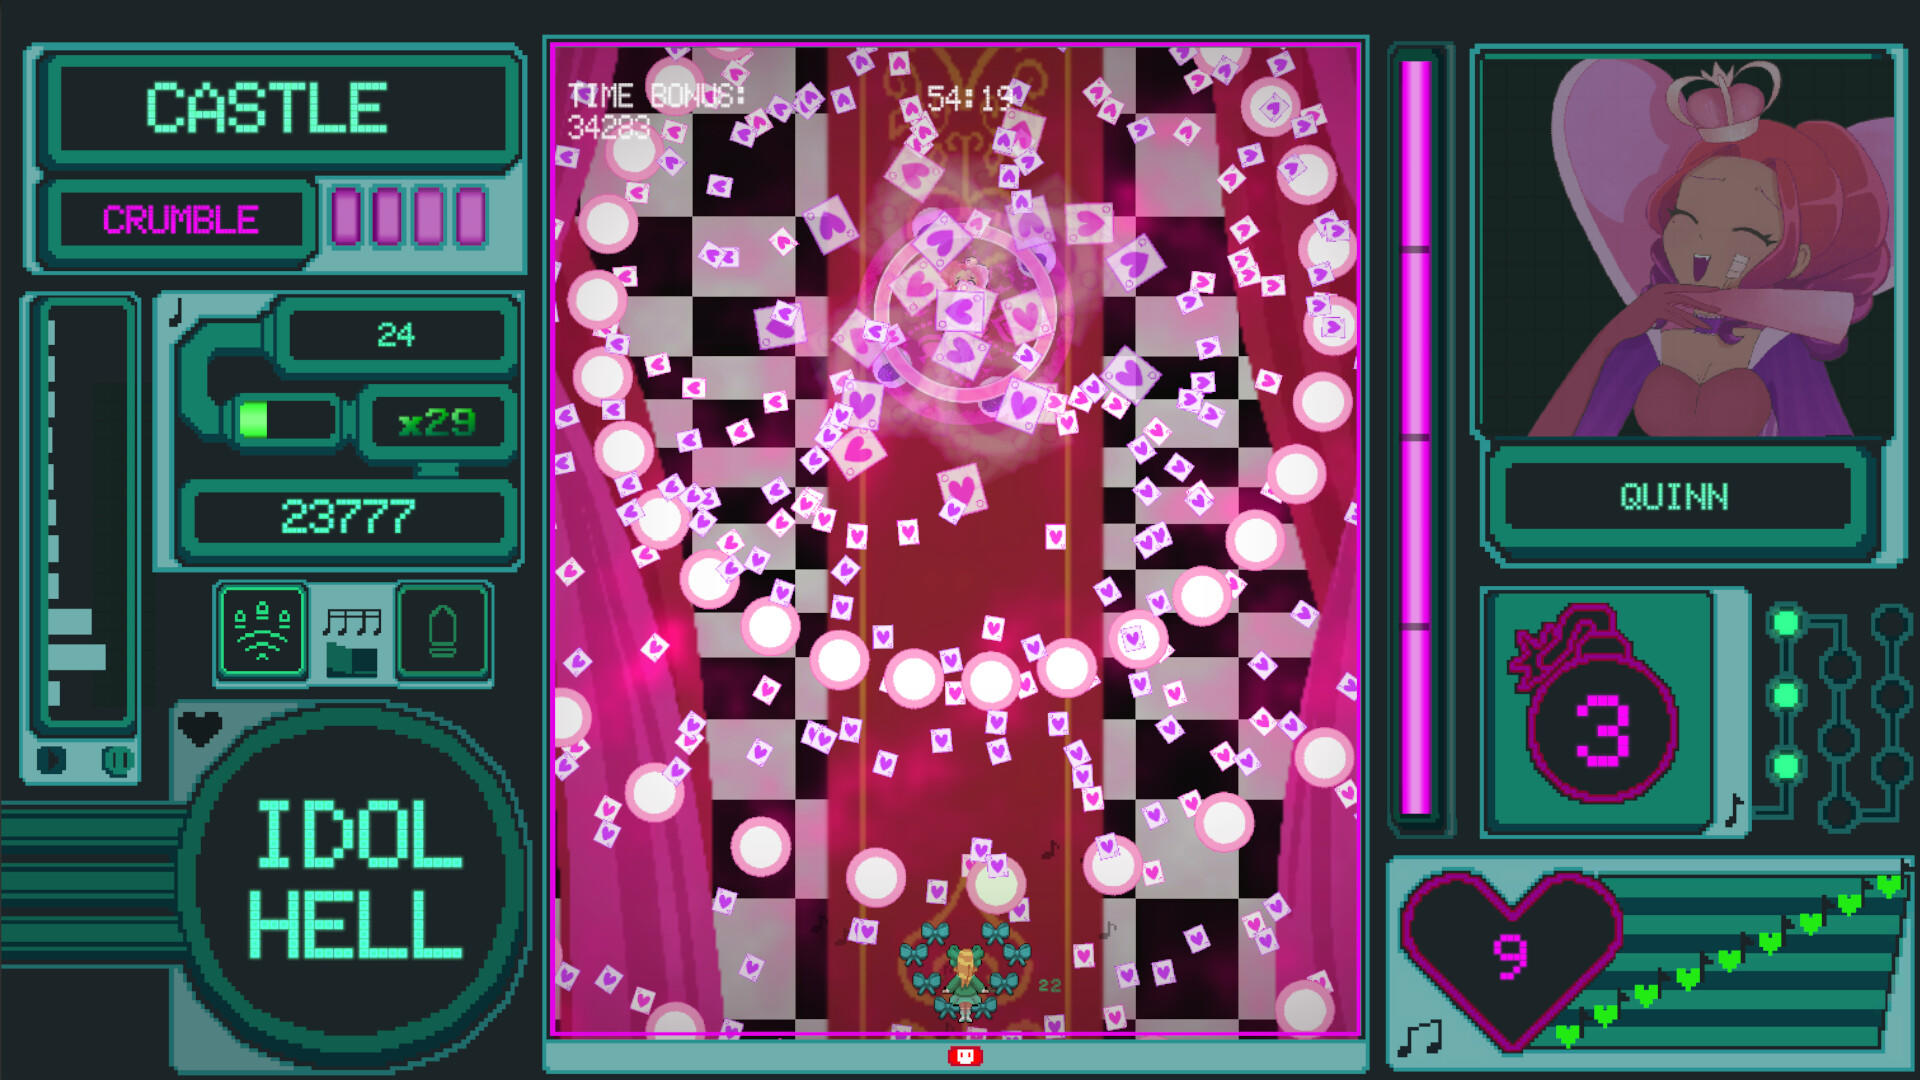 Idol Hell screenshot game